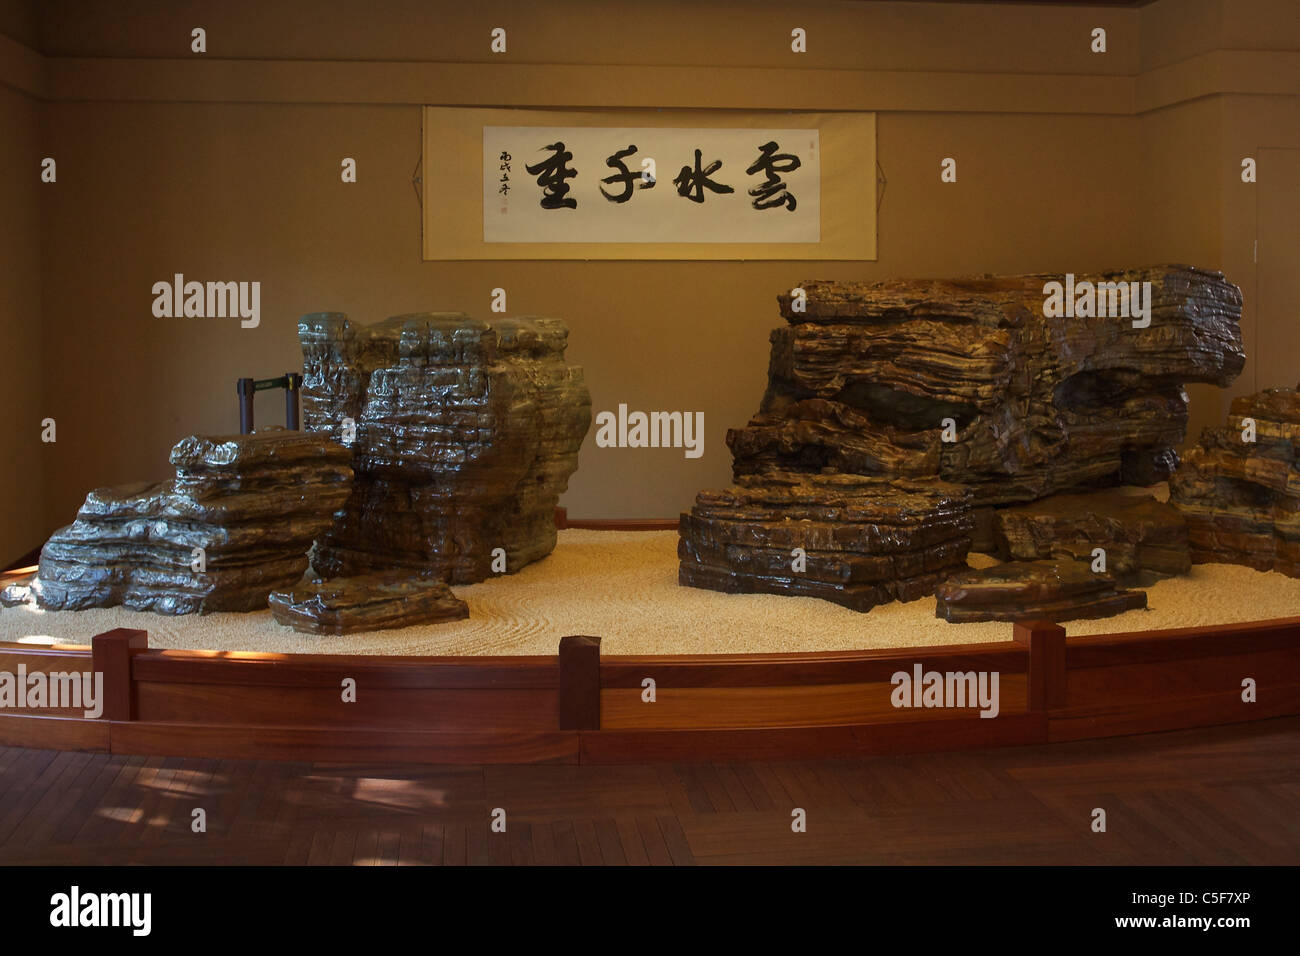 Display of rocks from the Hongshui River, Nan Lian gardens, Chi Lin Nunnery Stock Photo